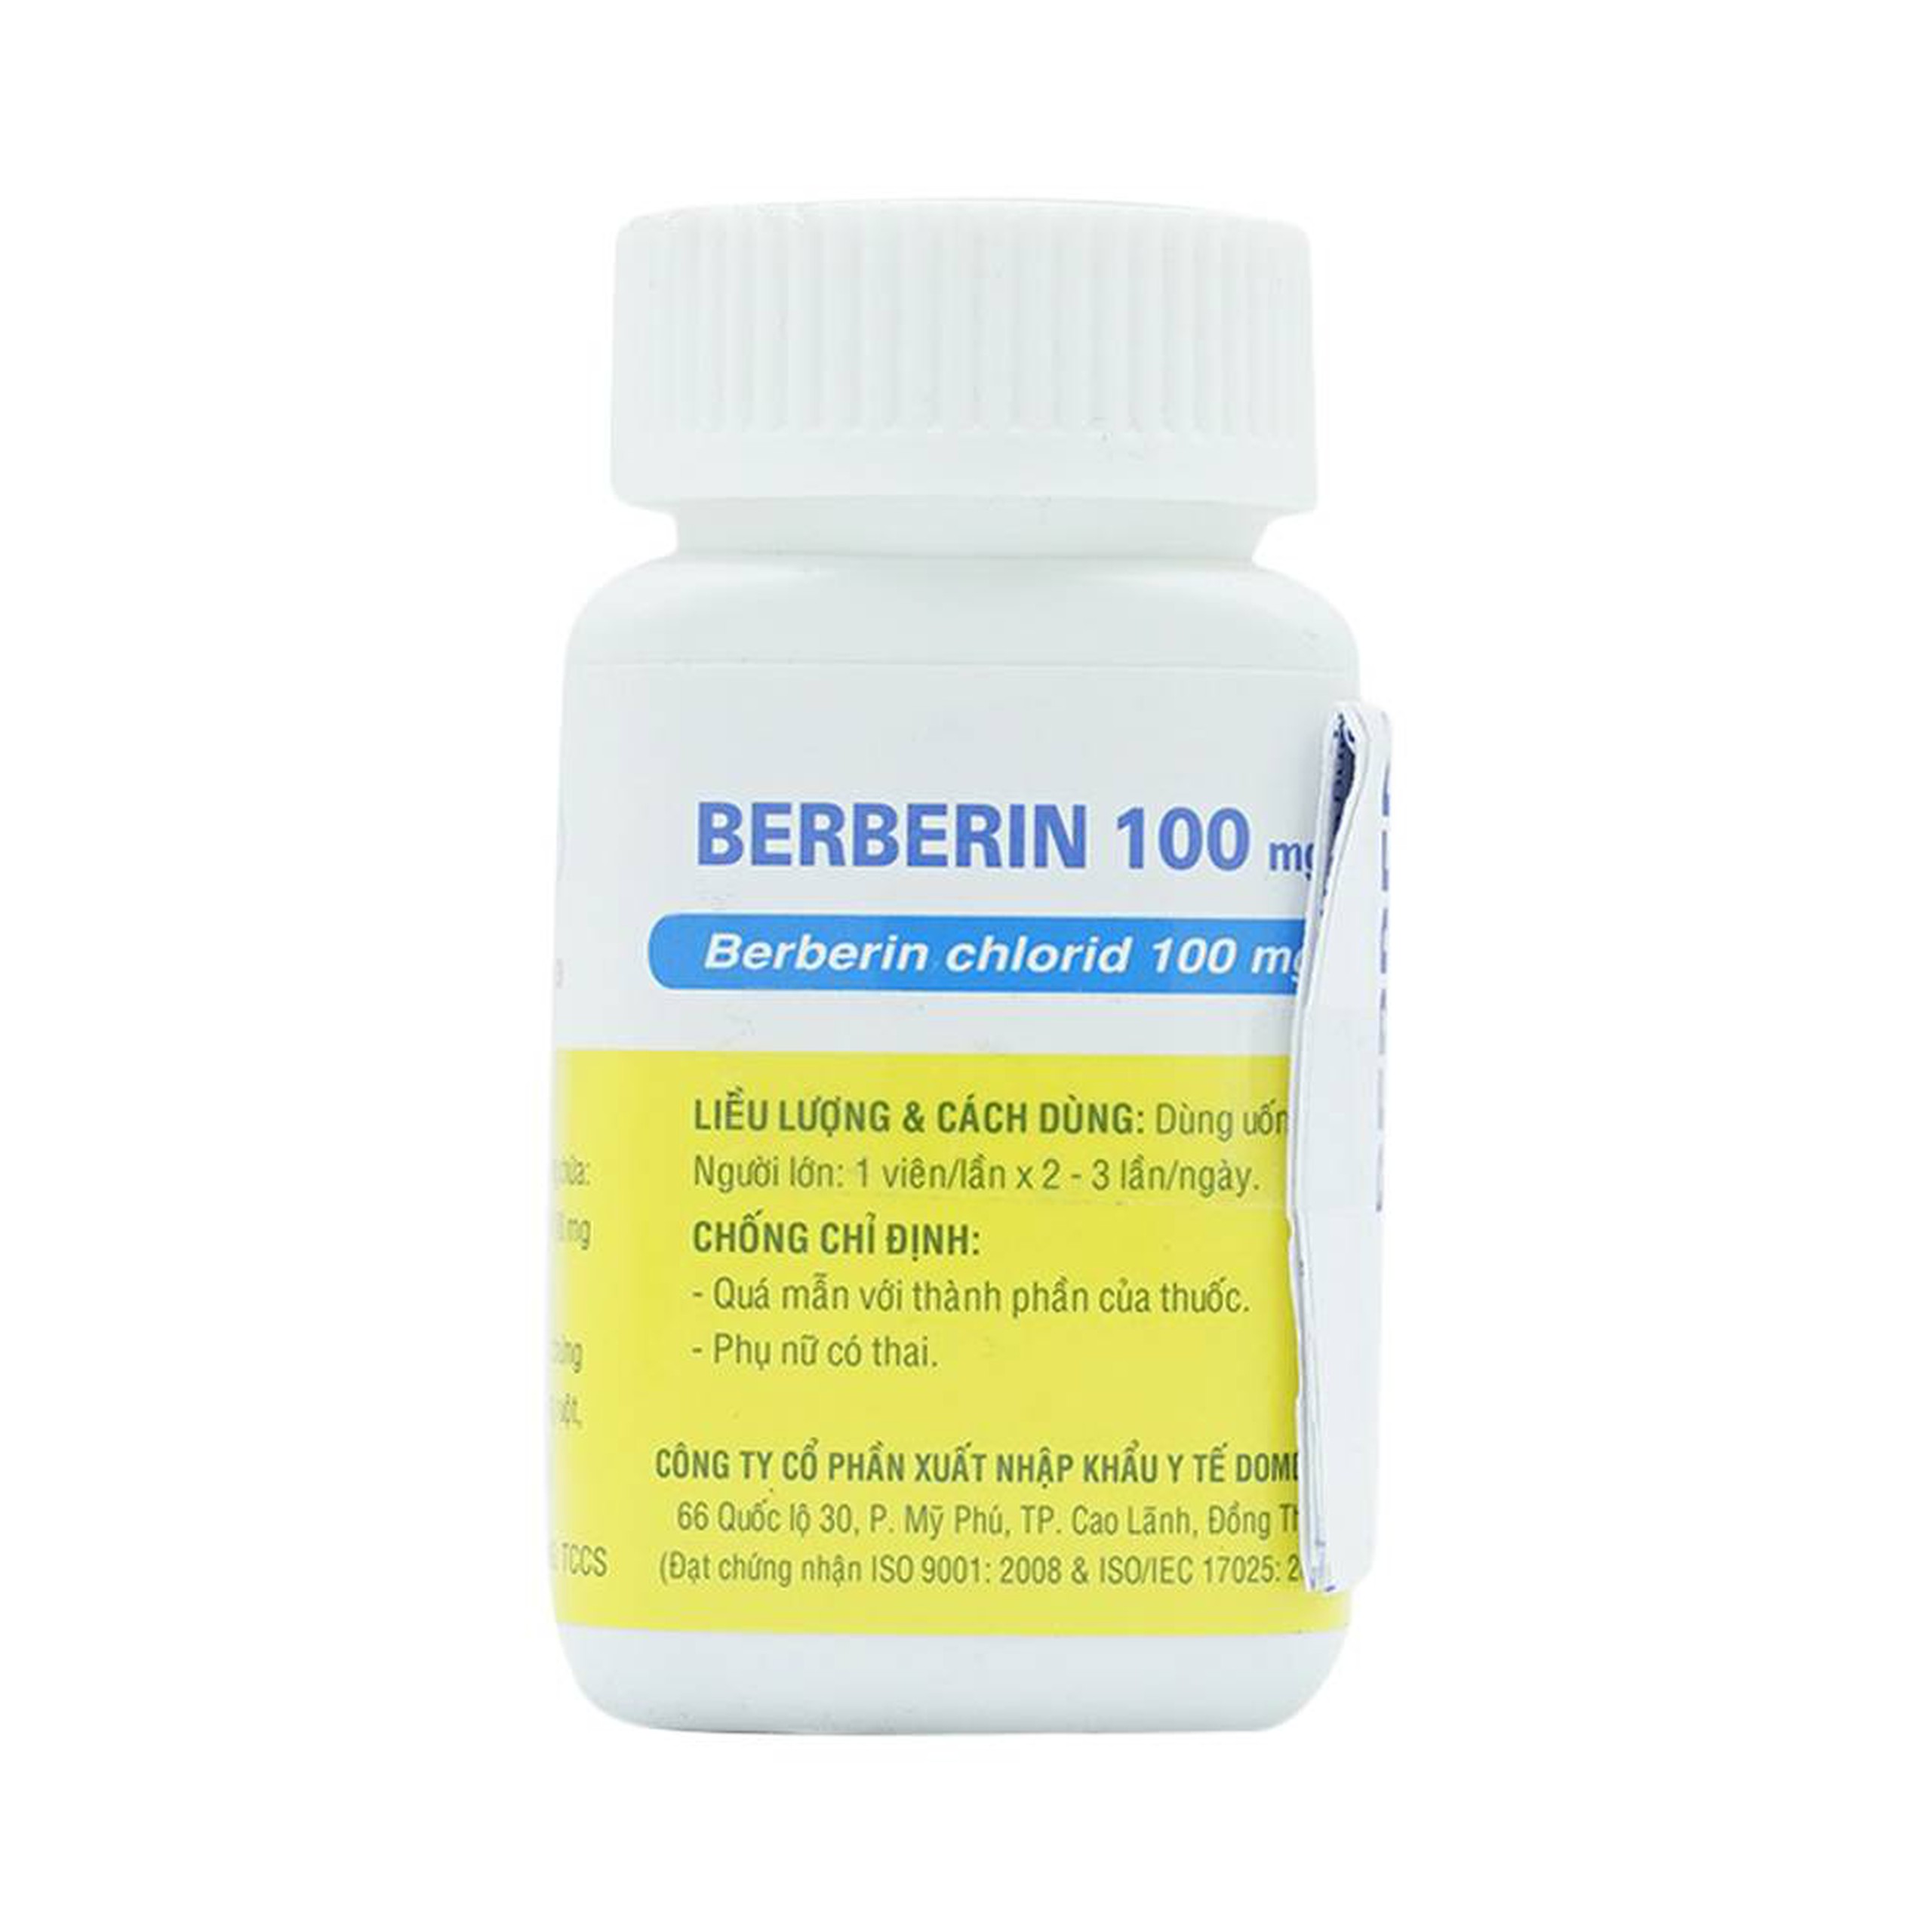 Thuốc Berberin 100mg Domesco điều trị nhiễm khuẩn đường ruột, tiêu chảy, kiết lỵ (100 viên)